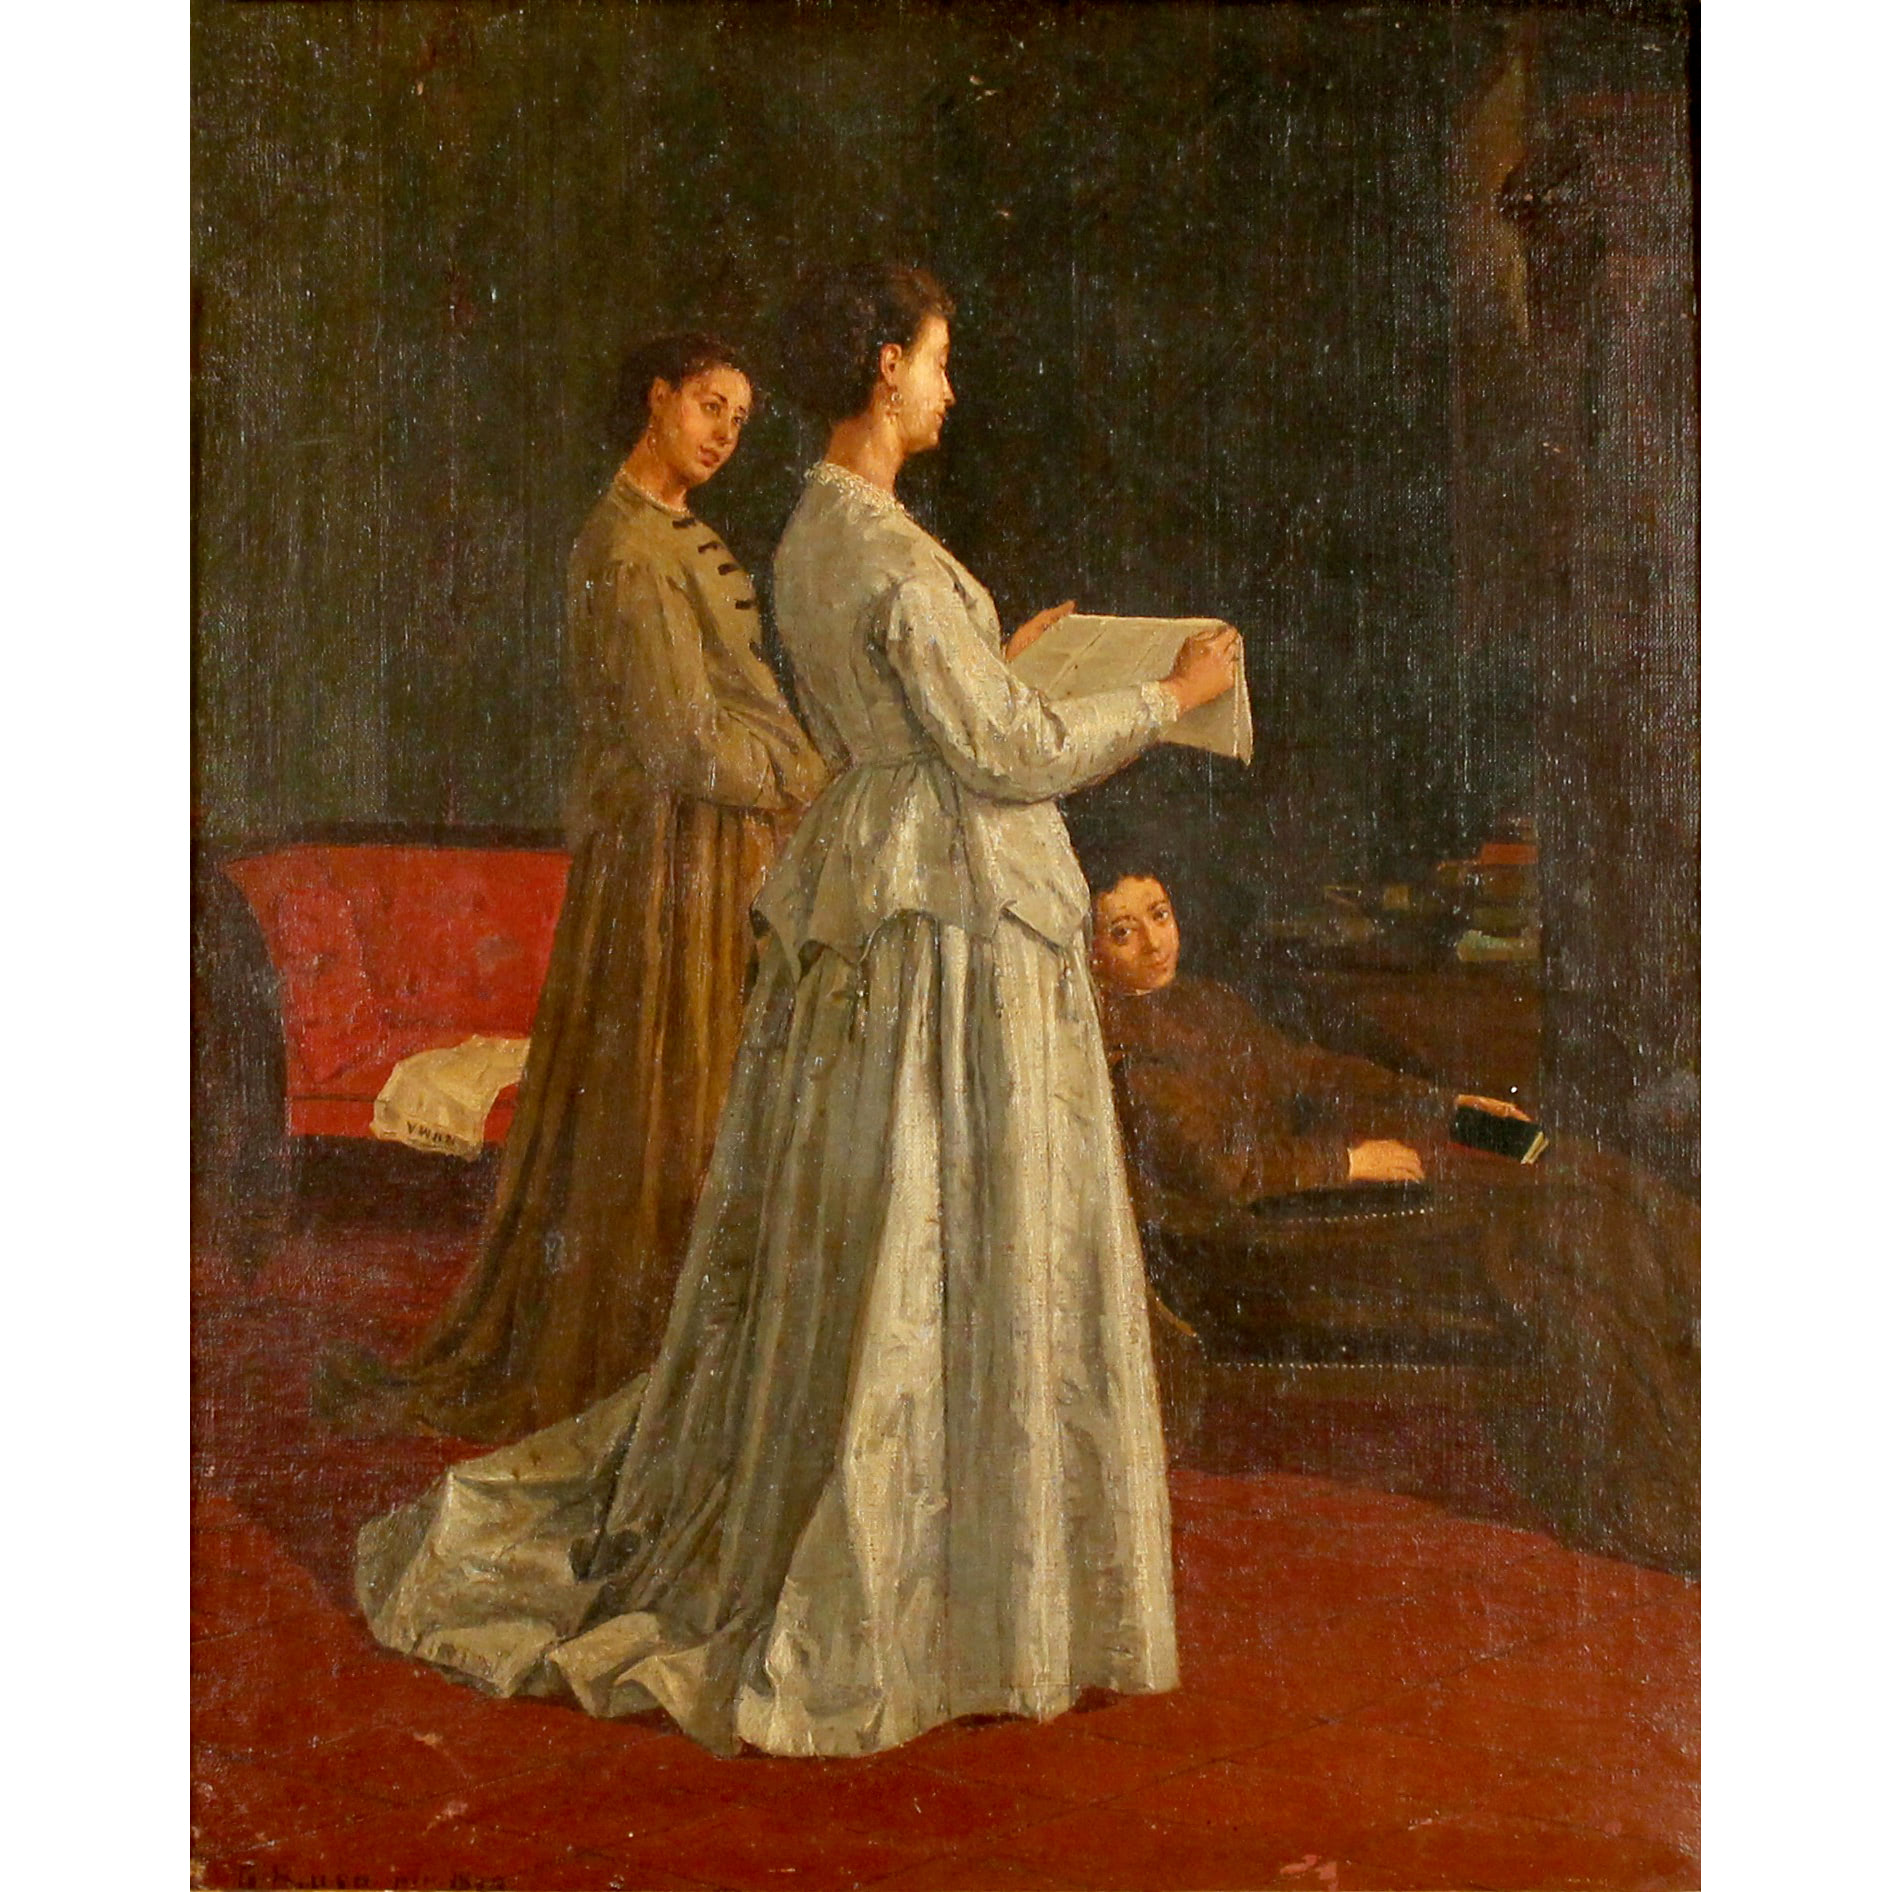 Gaetano Brusà (XIX) "Lettrice" - "Reader"